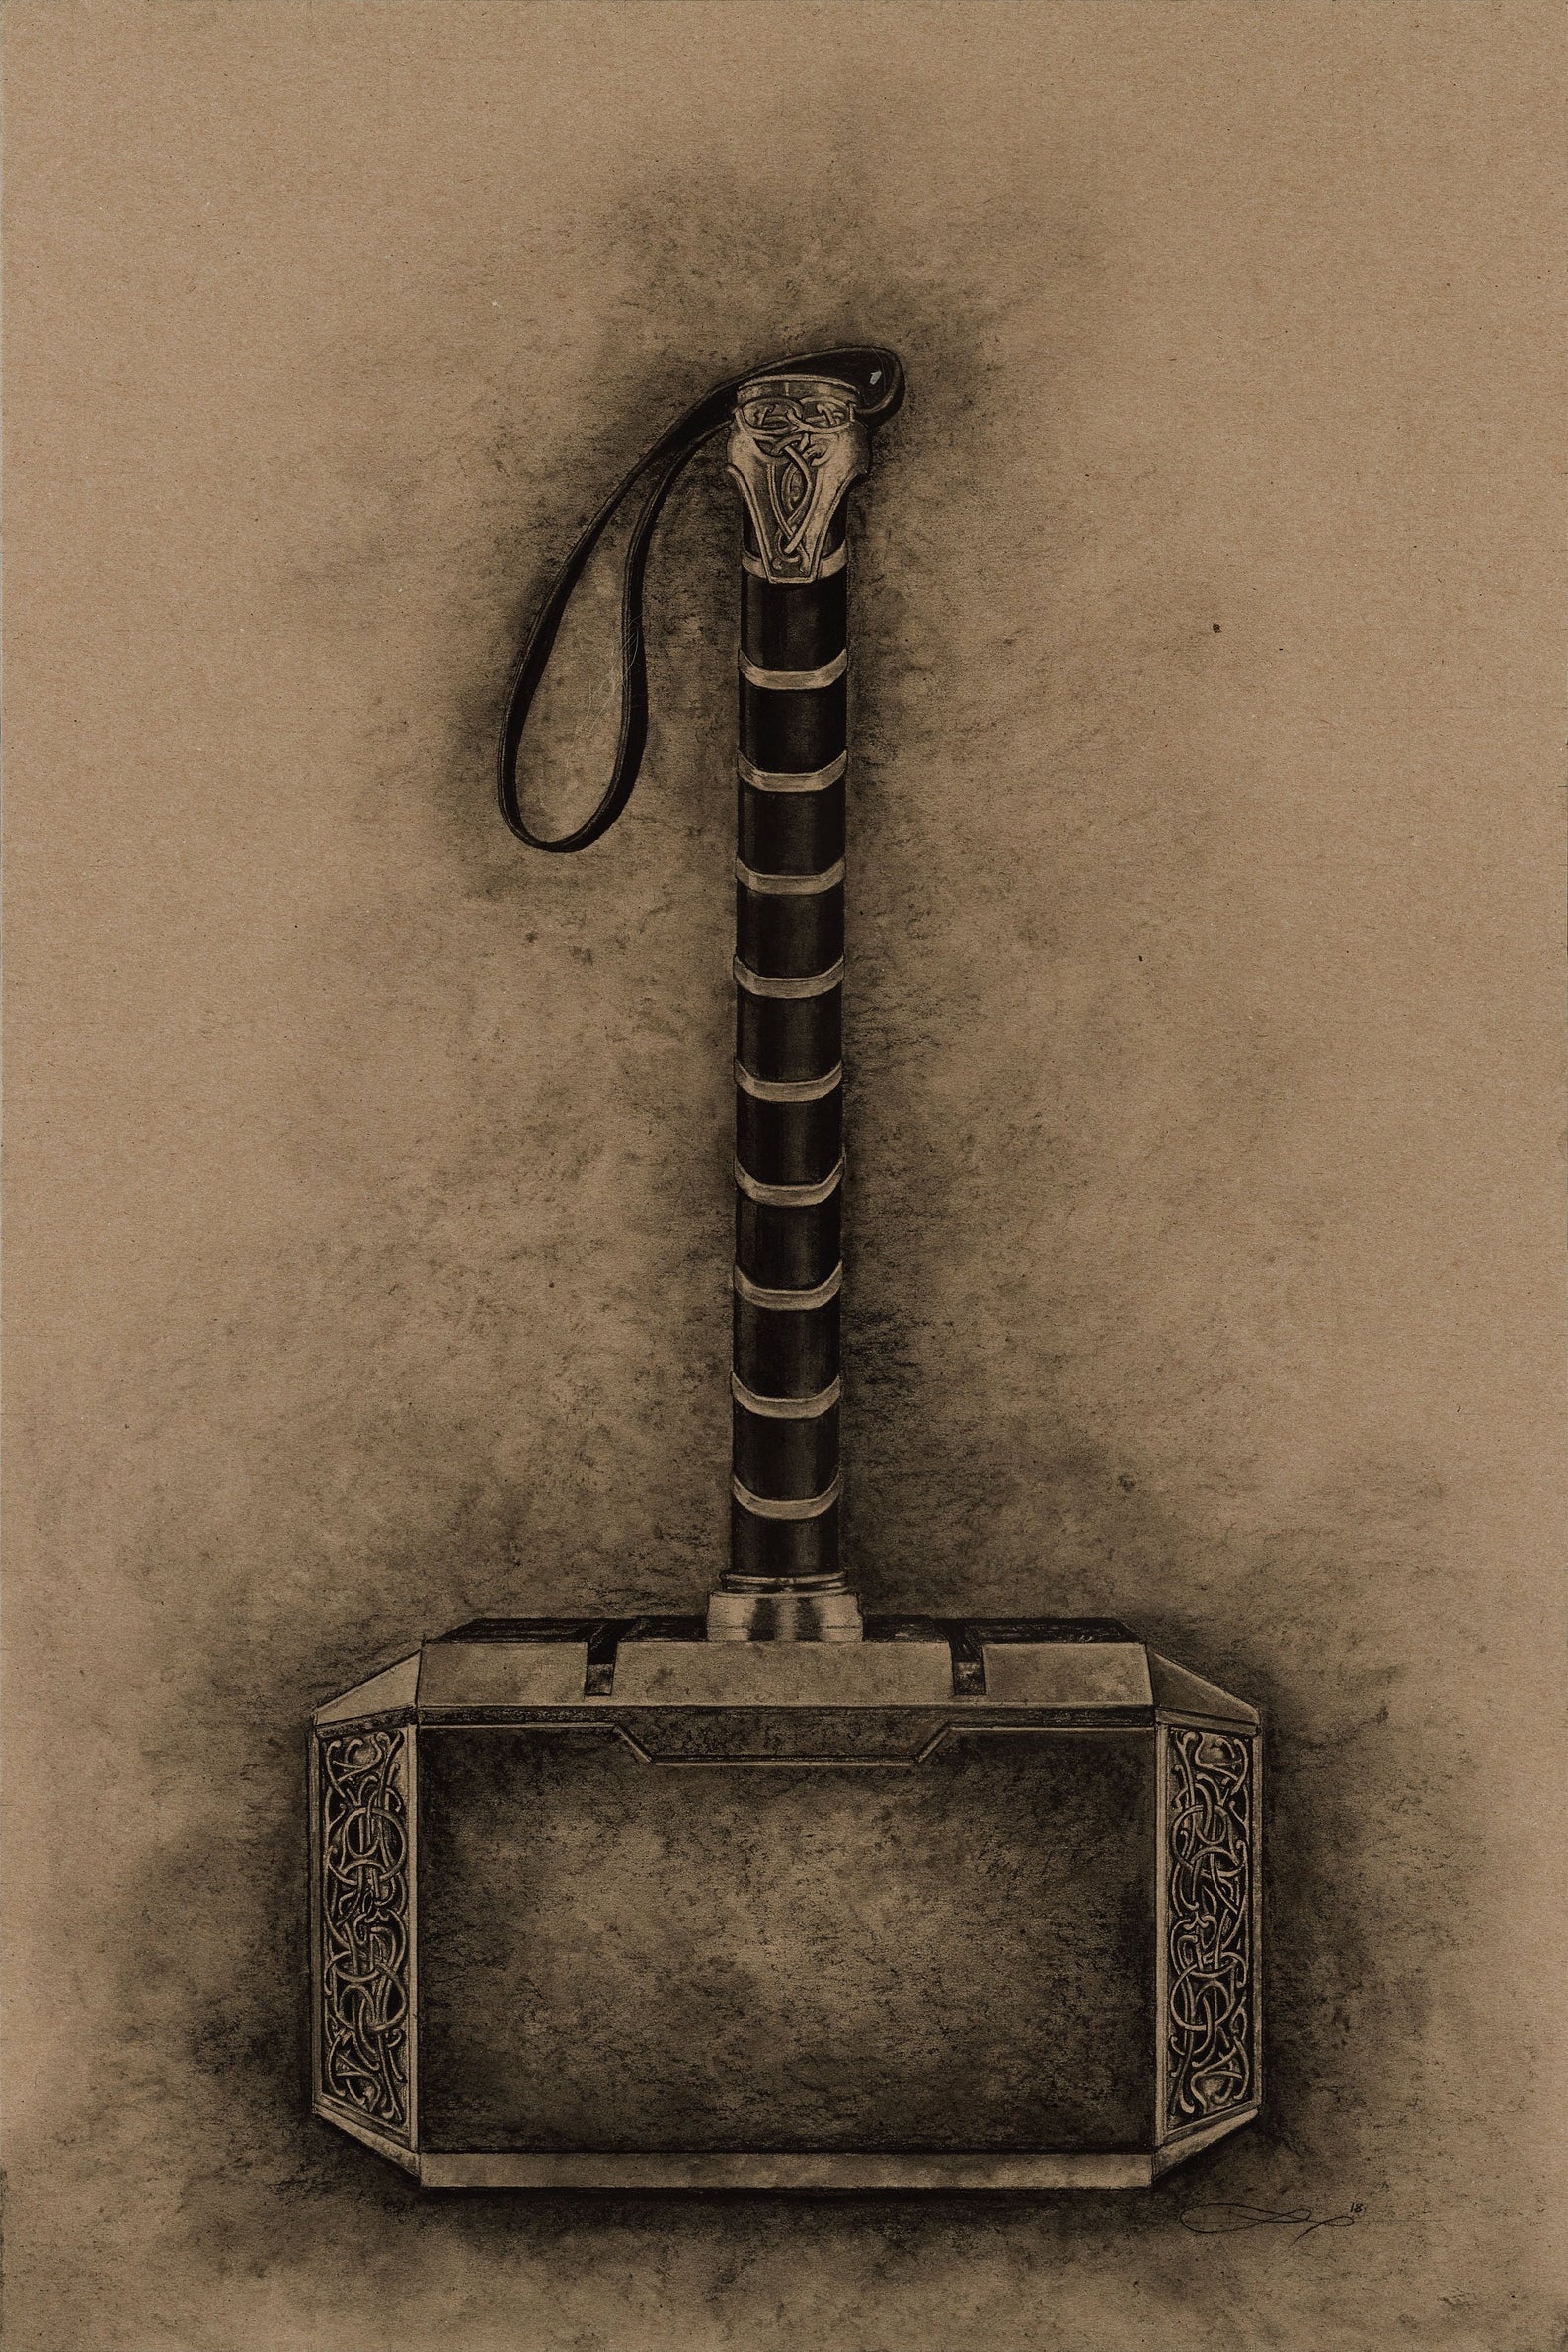 Pin by Elodie Klein on Dies und Das | Hammer drawing, Thors hammer, Art  sketch ideas